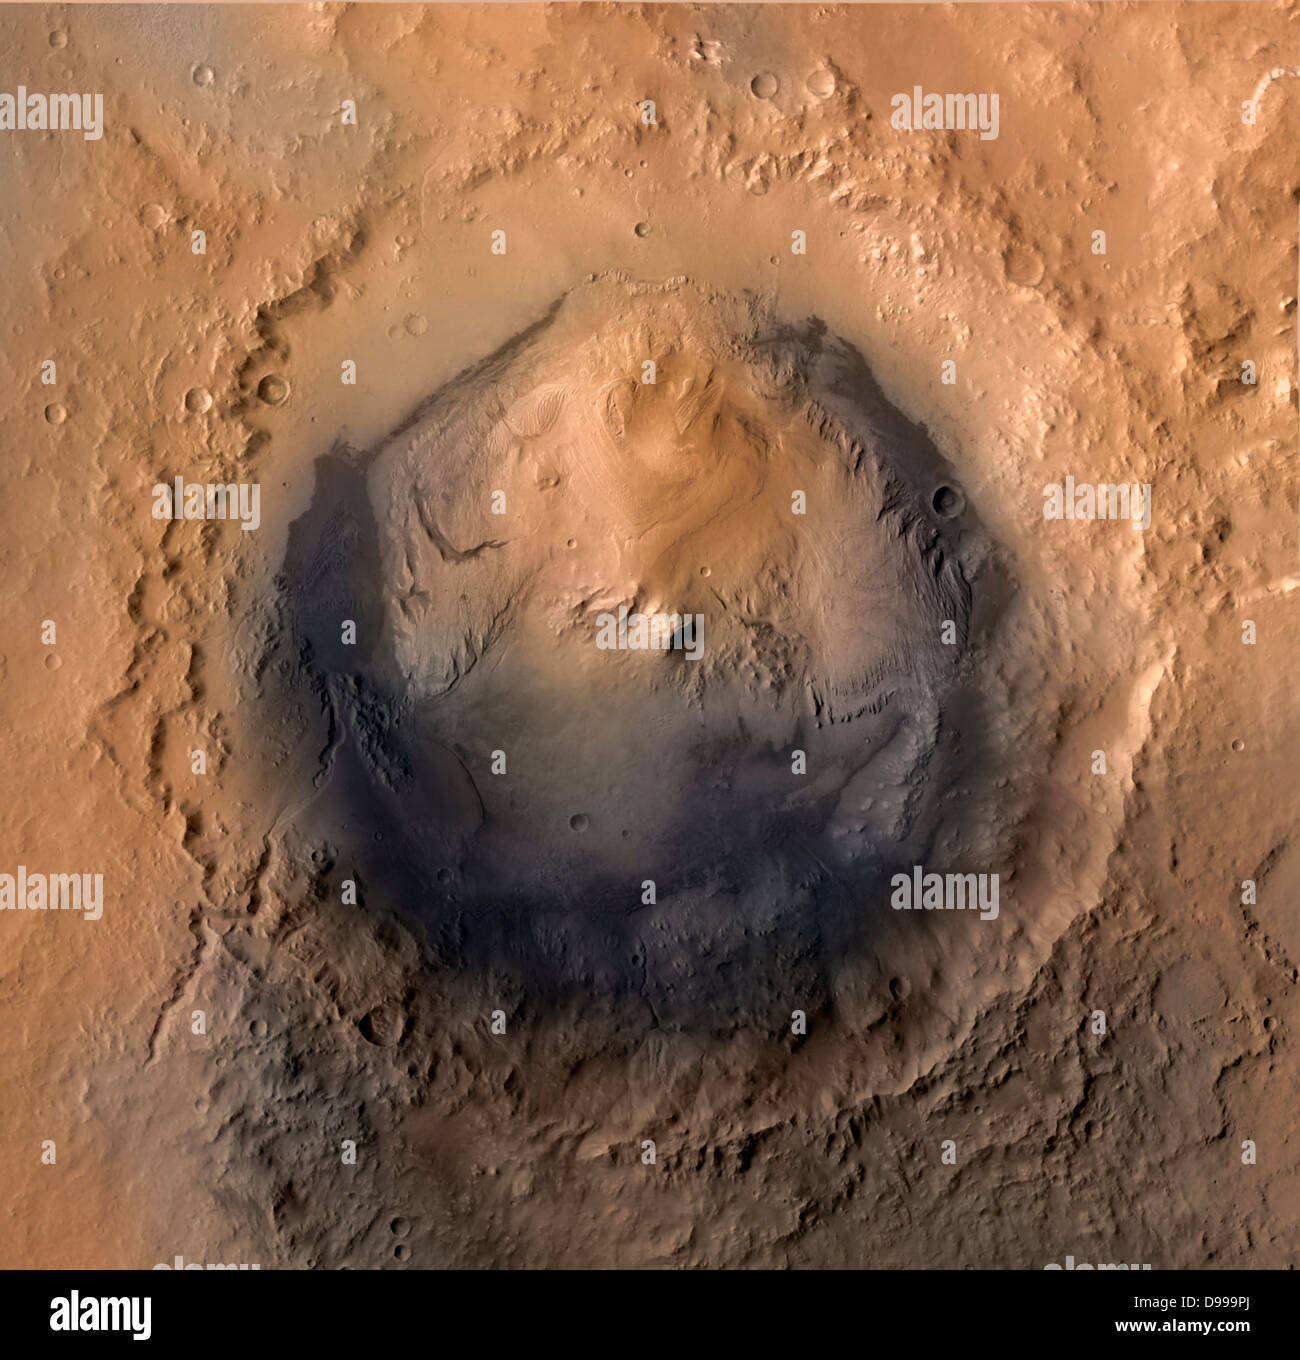 Im Juni 2012, ist das Ziel der Landung Bereich für die NASA Mars Science Laboratory Mission ist die Ellipse auf dem Bild der Krater Gale gekennzeichnet. Stockfoto